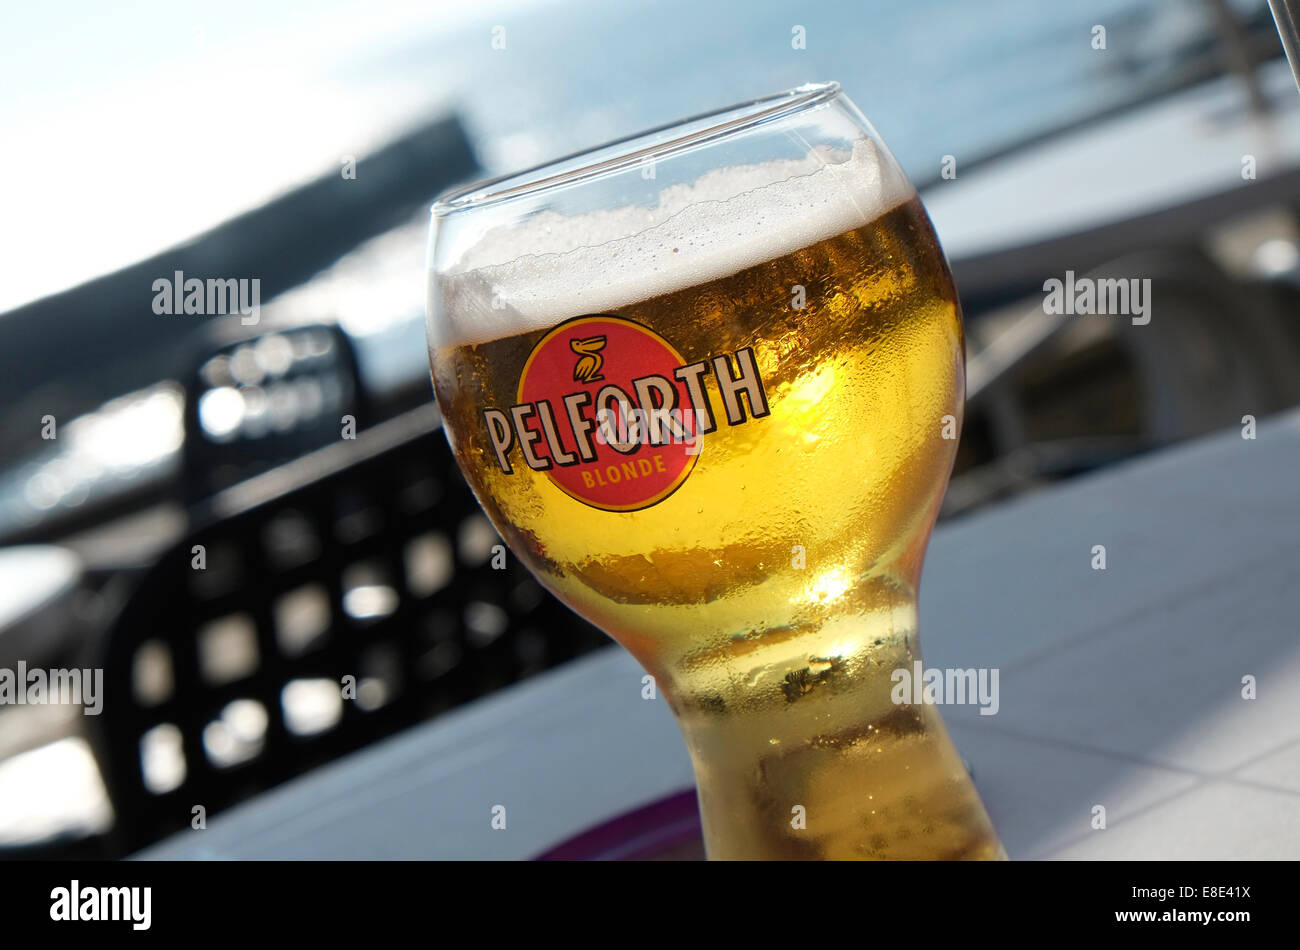 Pelforth beer glass Banque de photographies et d'images à haute résolution  - Alamy